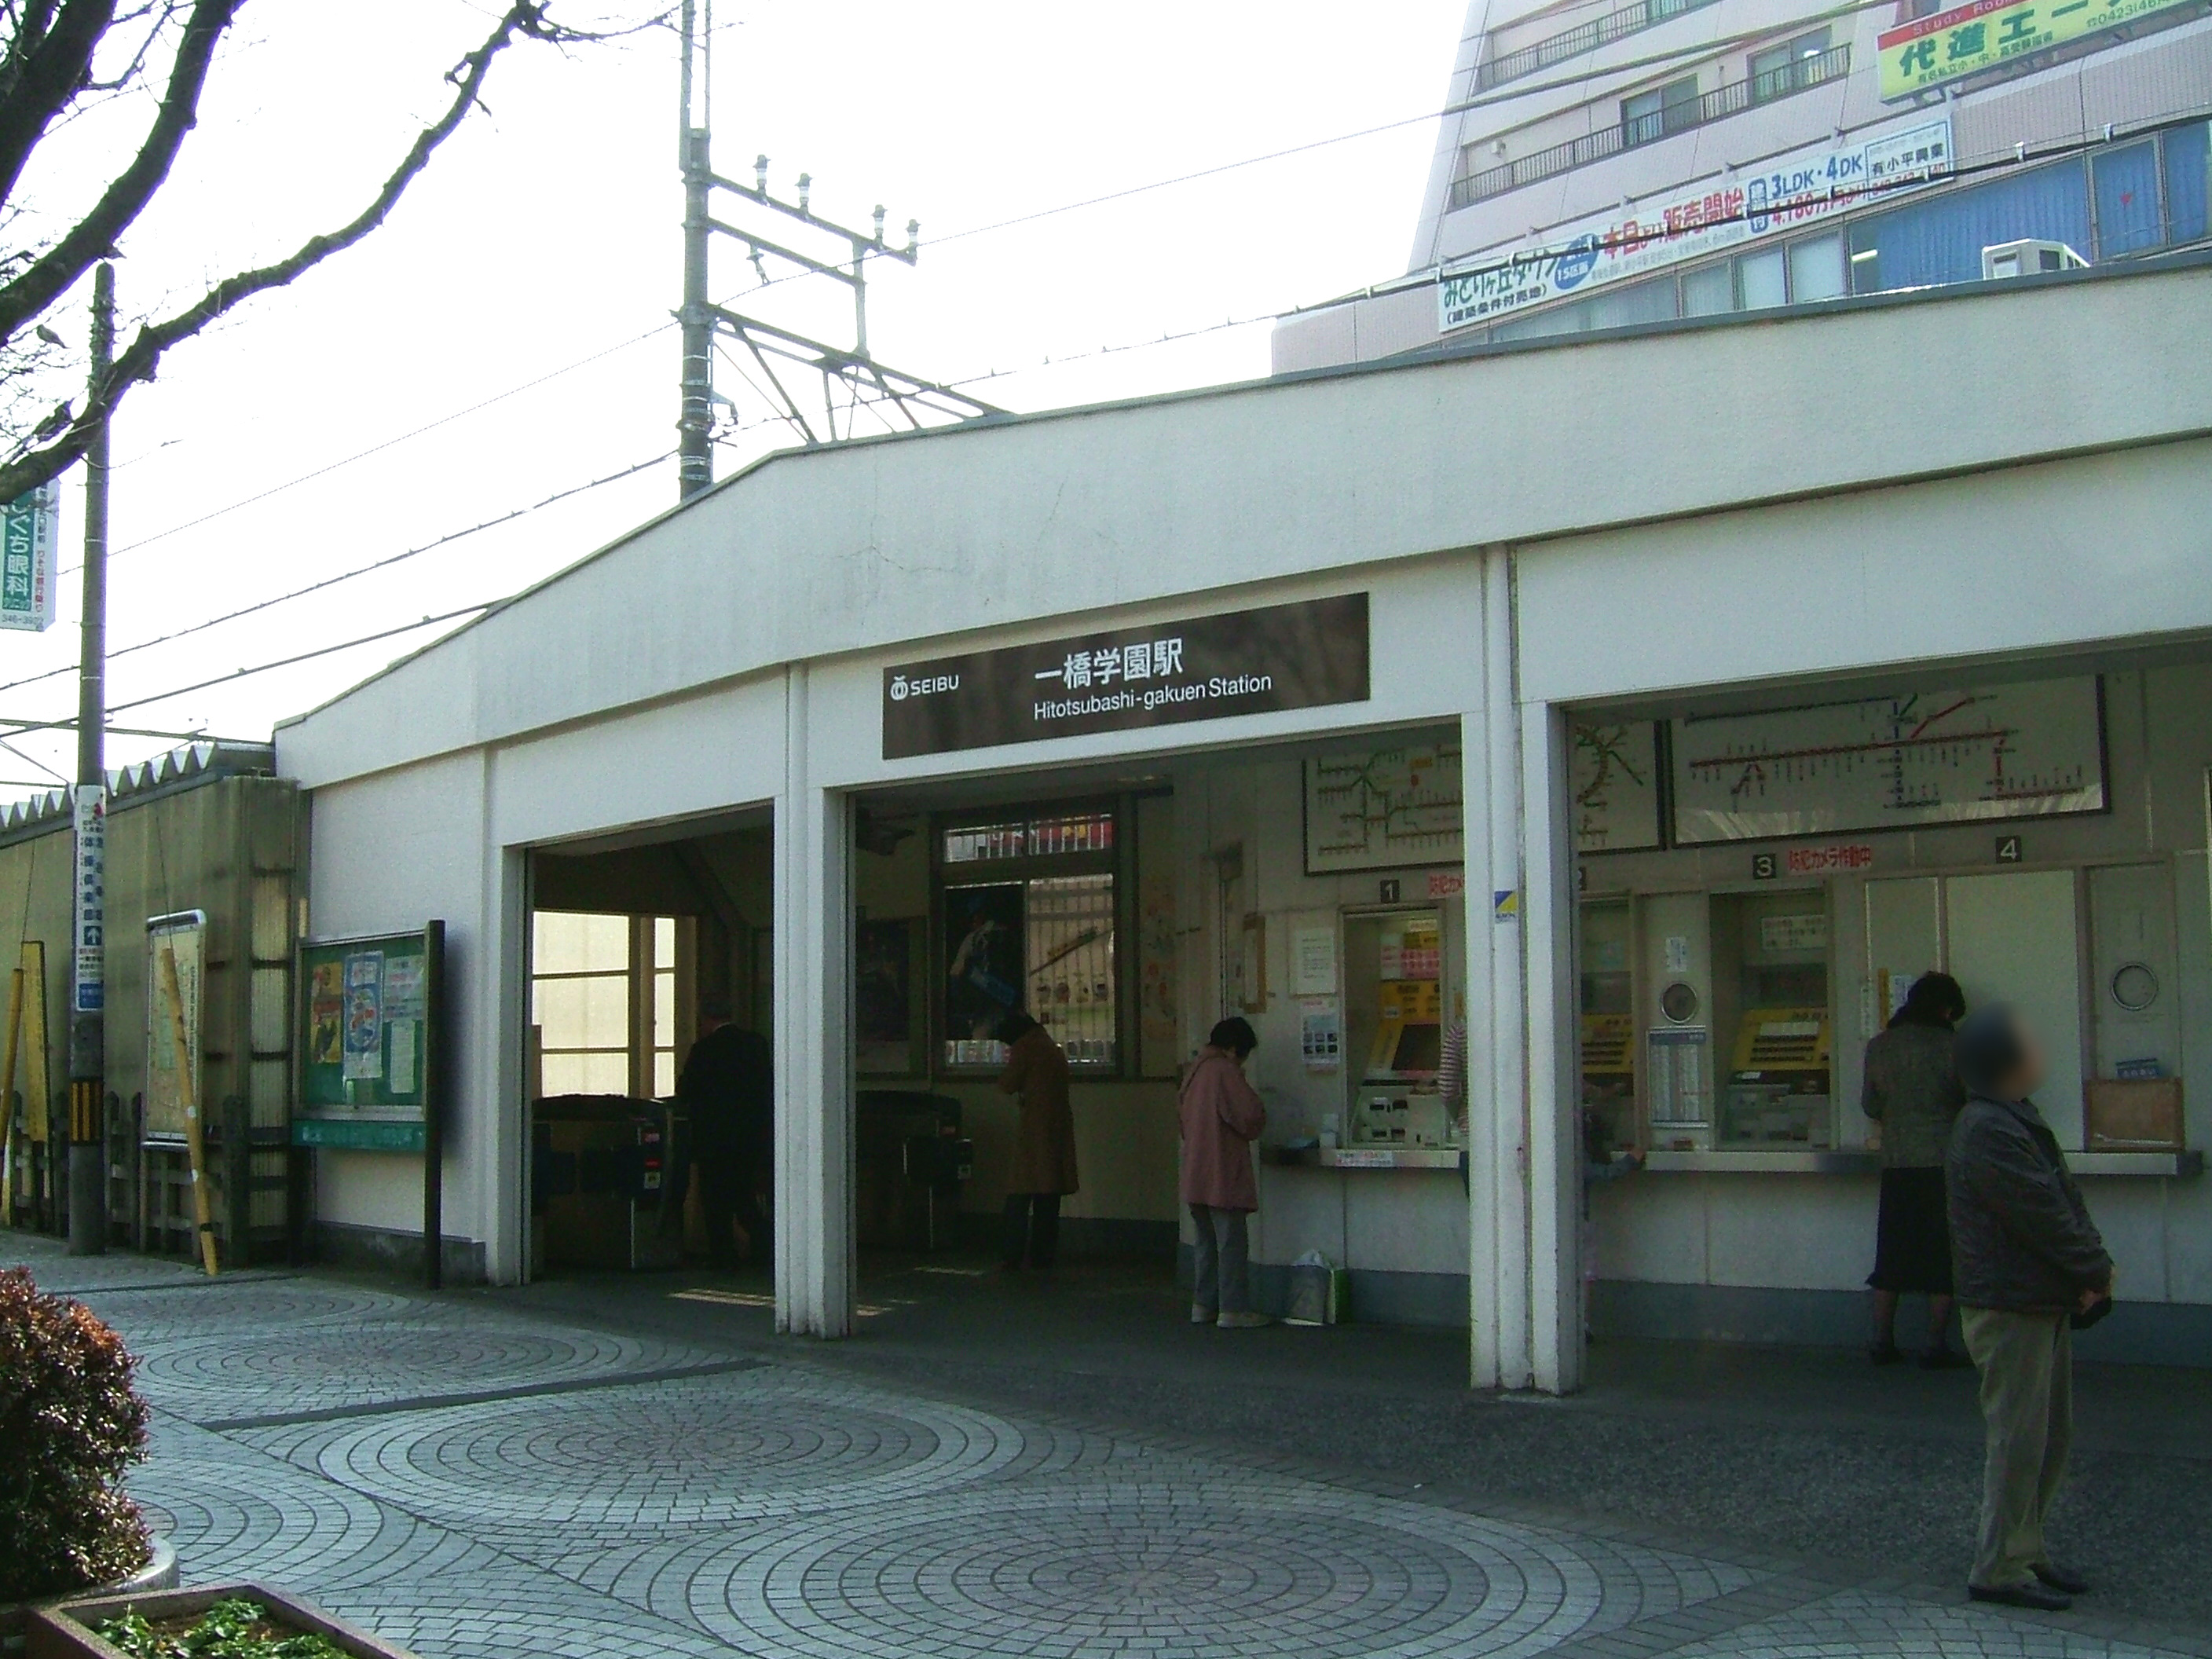 Kodaira Japan Hitotsubashi Gakuen Station